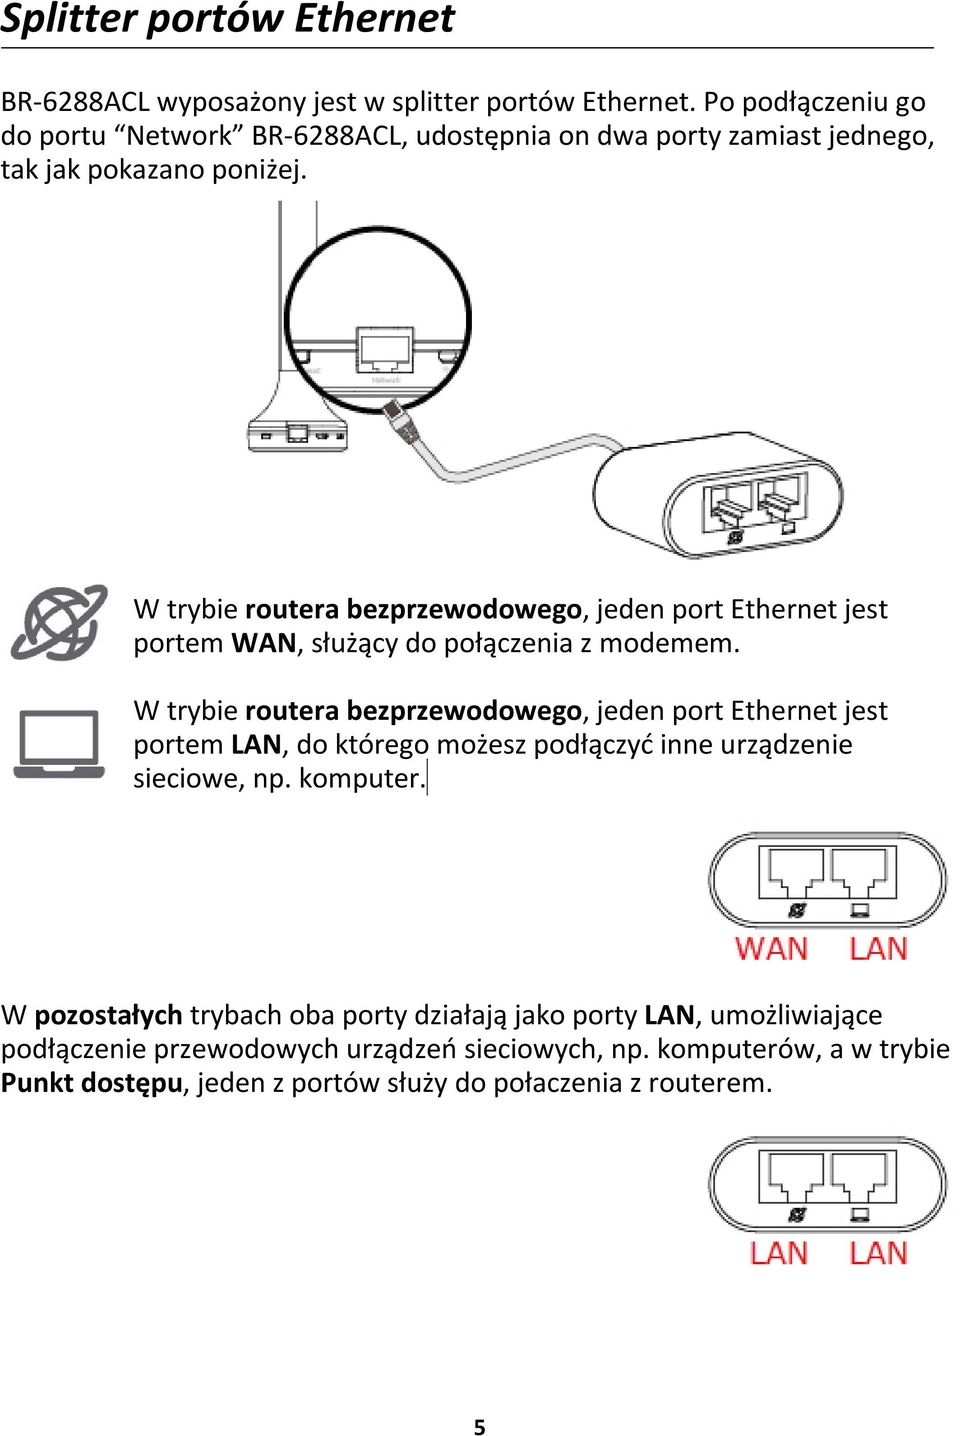 W trybie routera bezprzewodowego, jeden port Ethernet jest portem WAN, służący do połączenia z modemem.